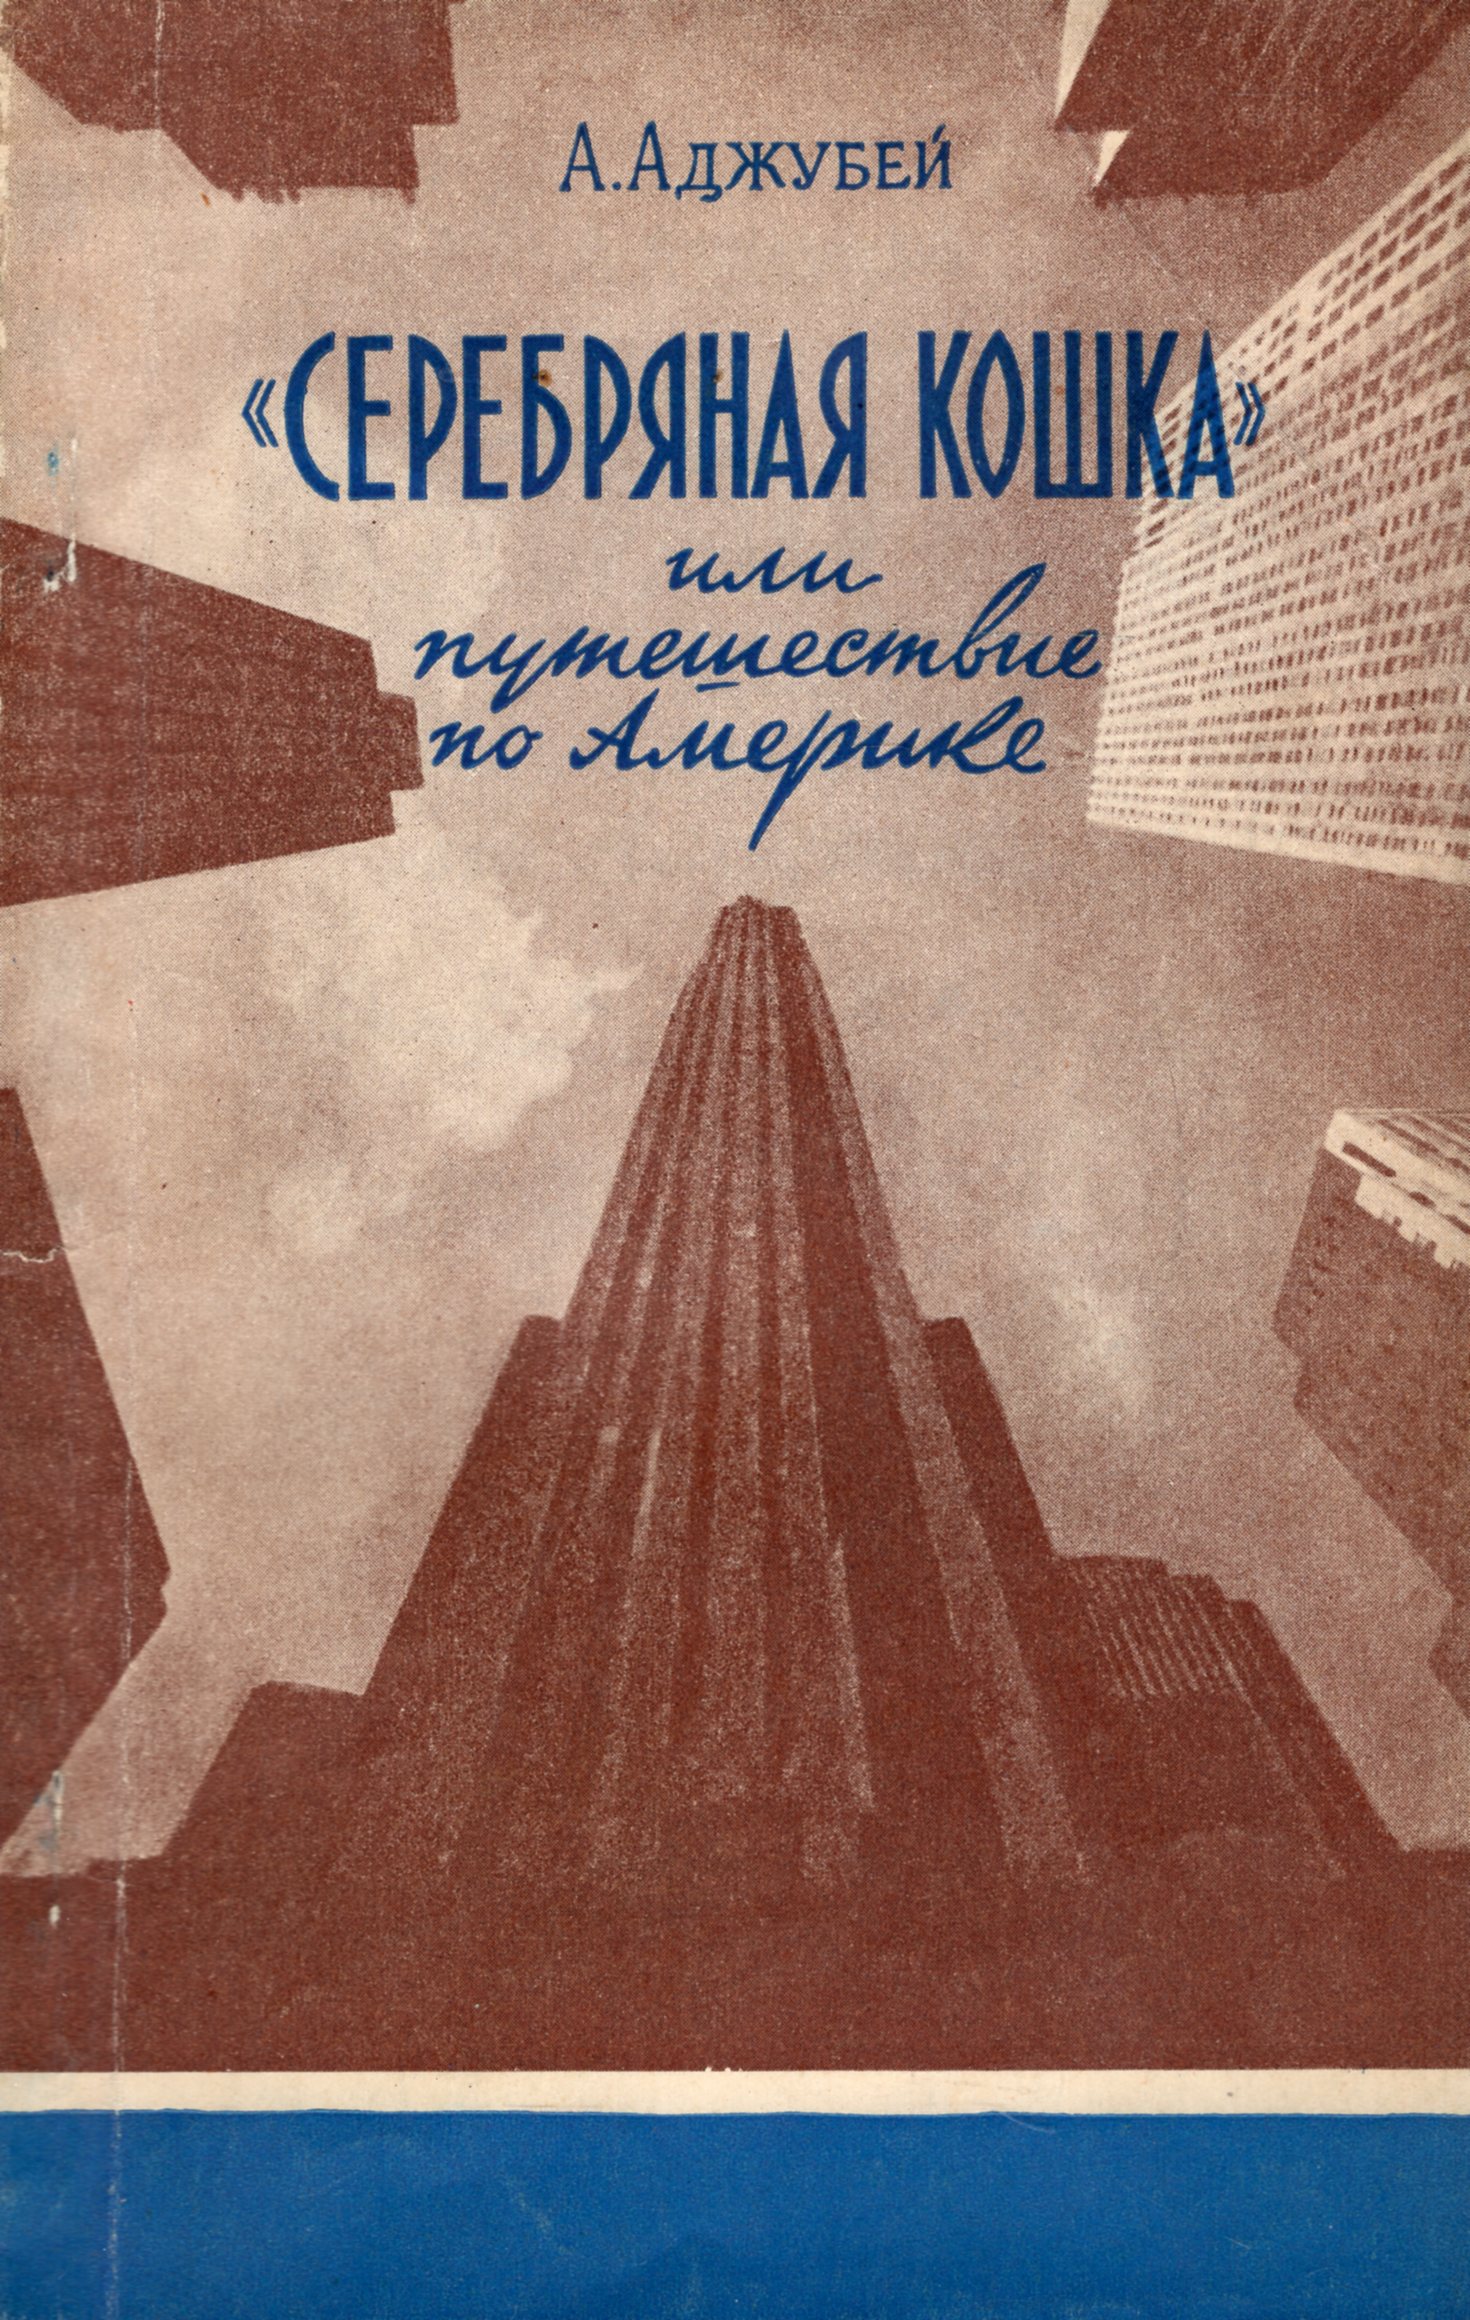 Советская книга о США